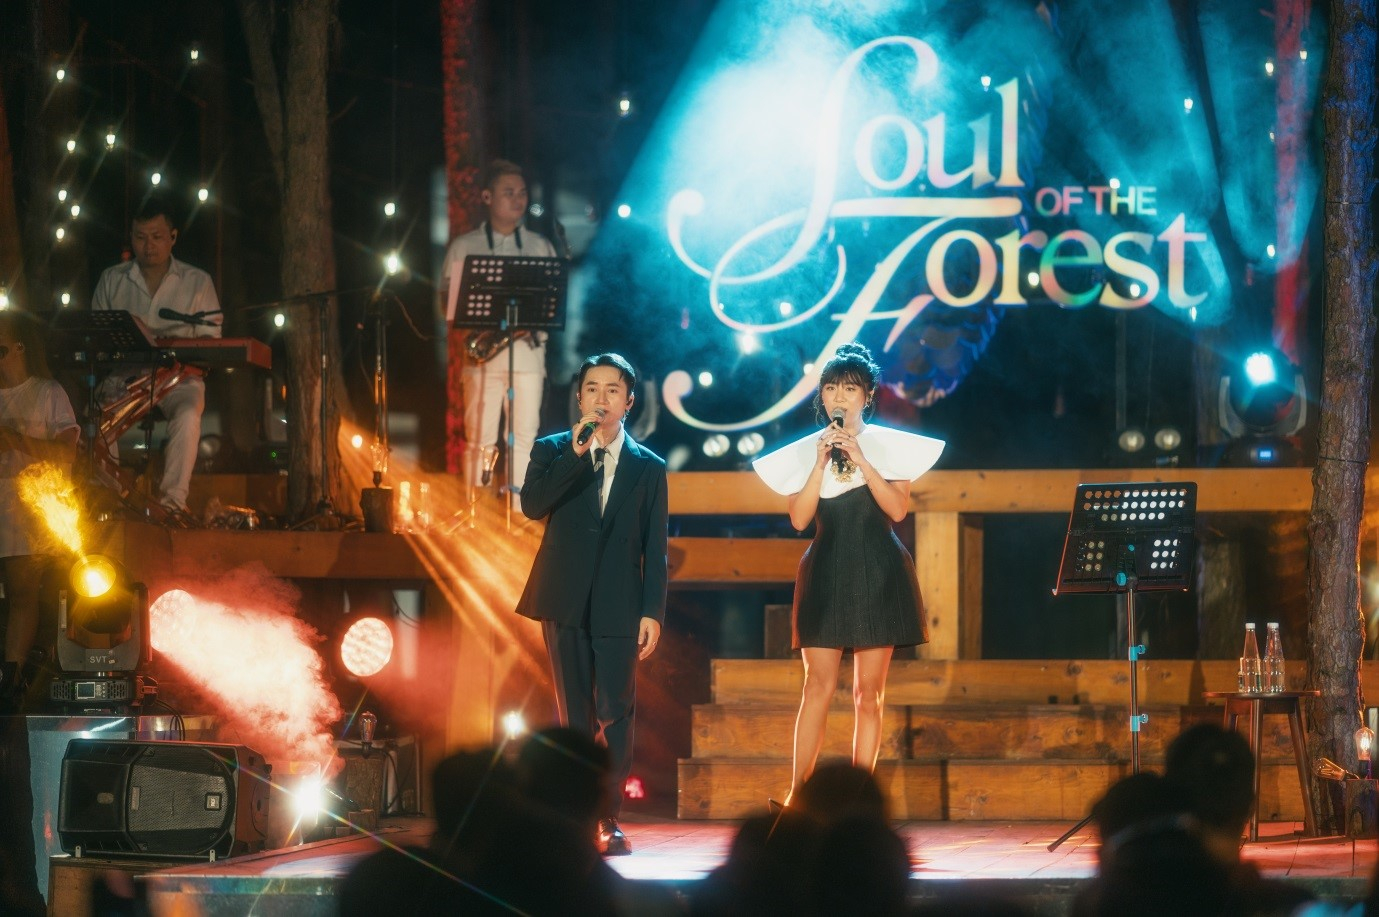 Phan Mạnh Quỳnh hòa giọng ngọt ngào cùng Văn Mai Hương trong đêm nhạc kỷ niệm  1 năm Soul of the Forest